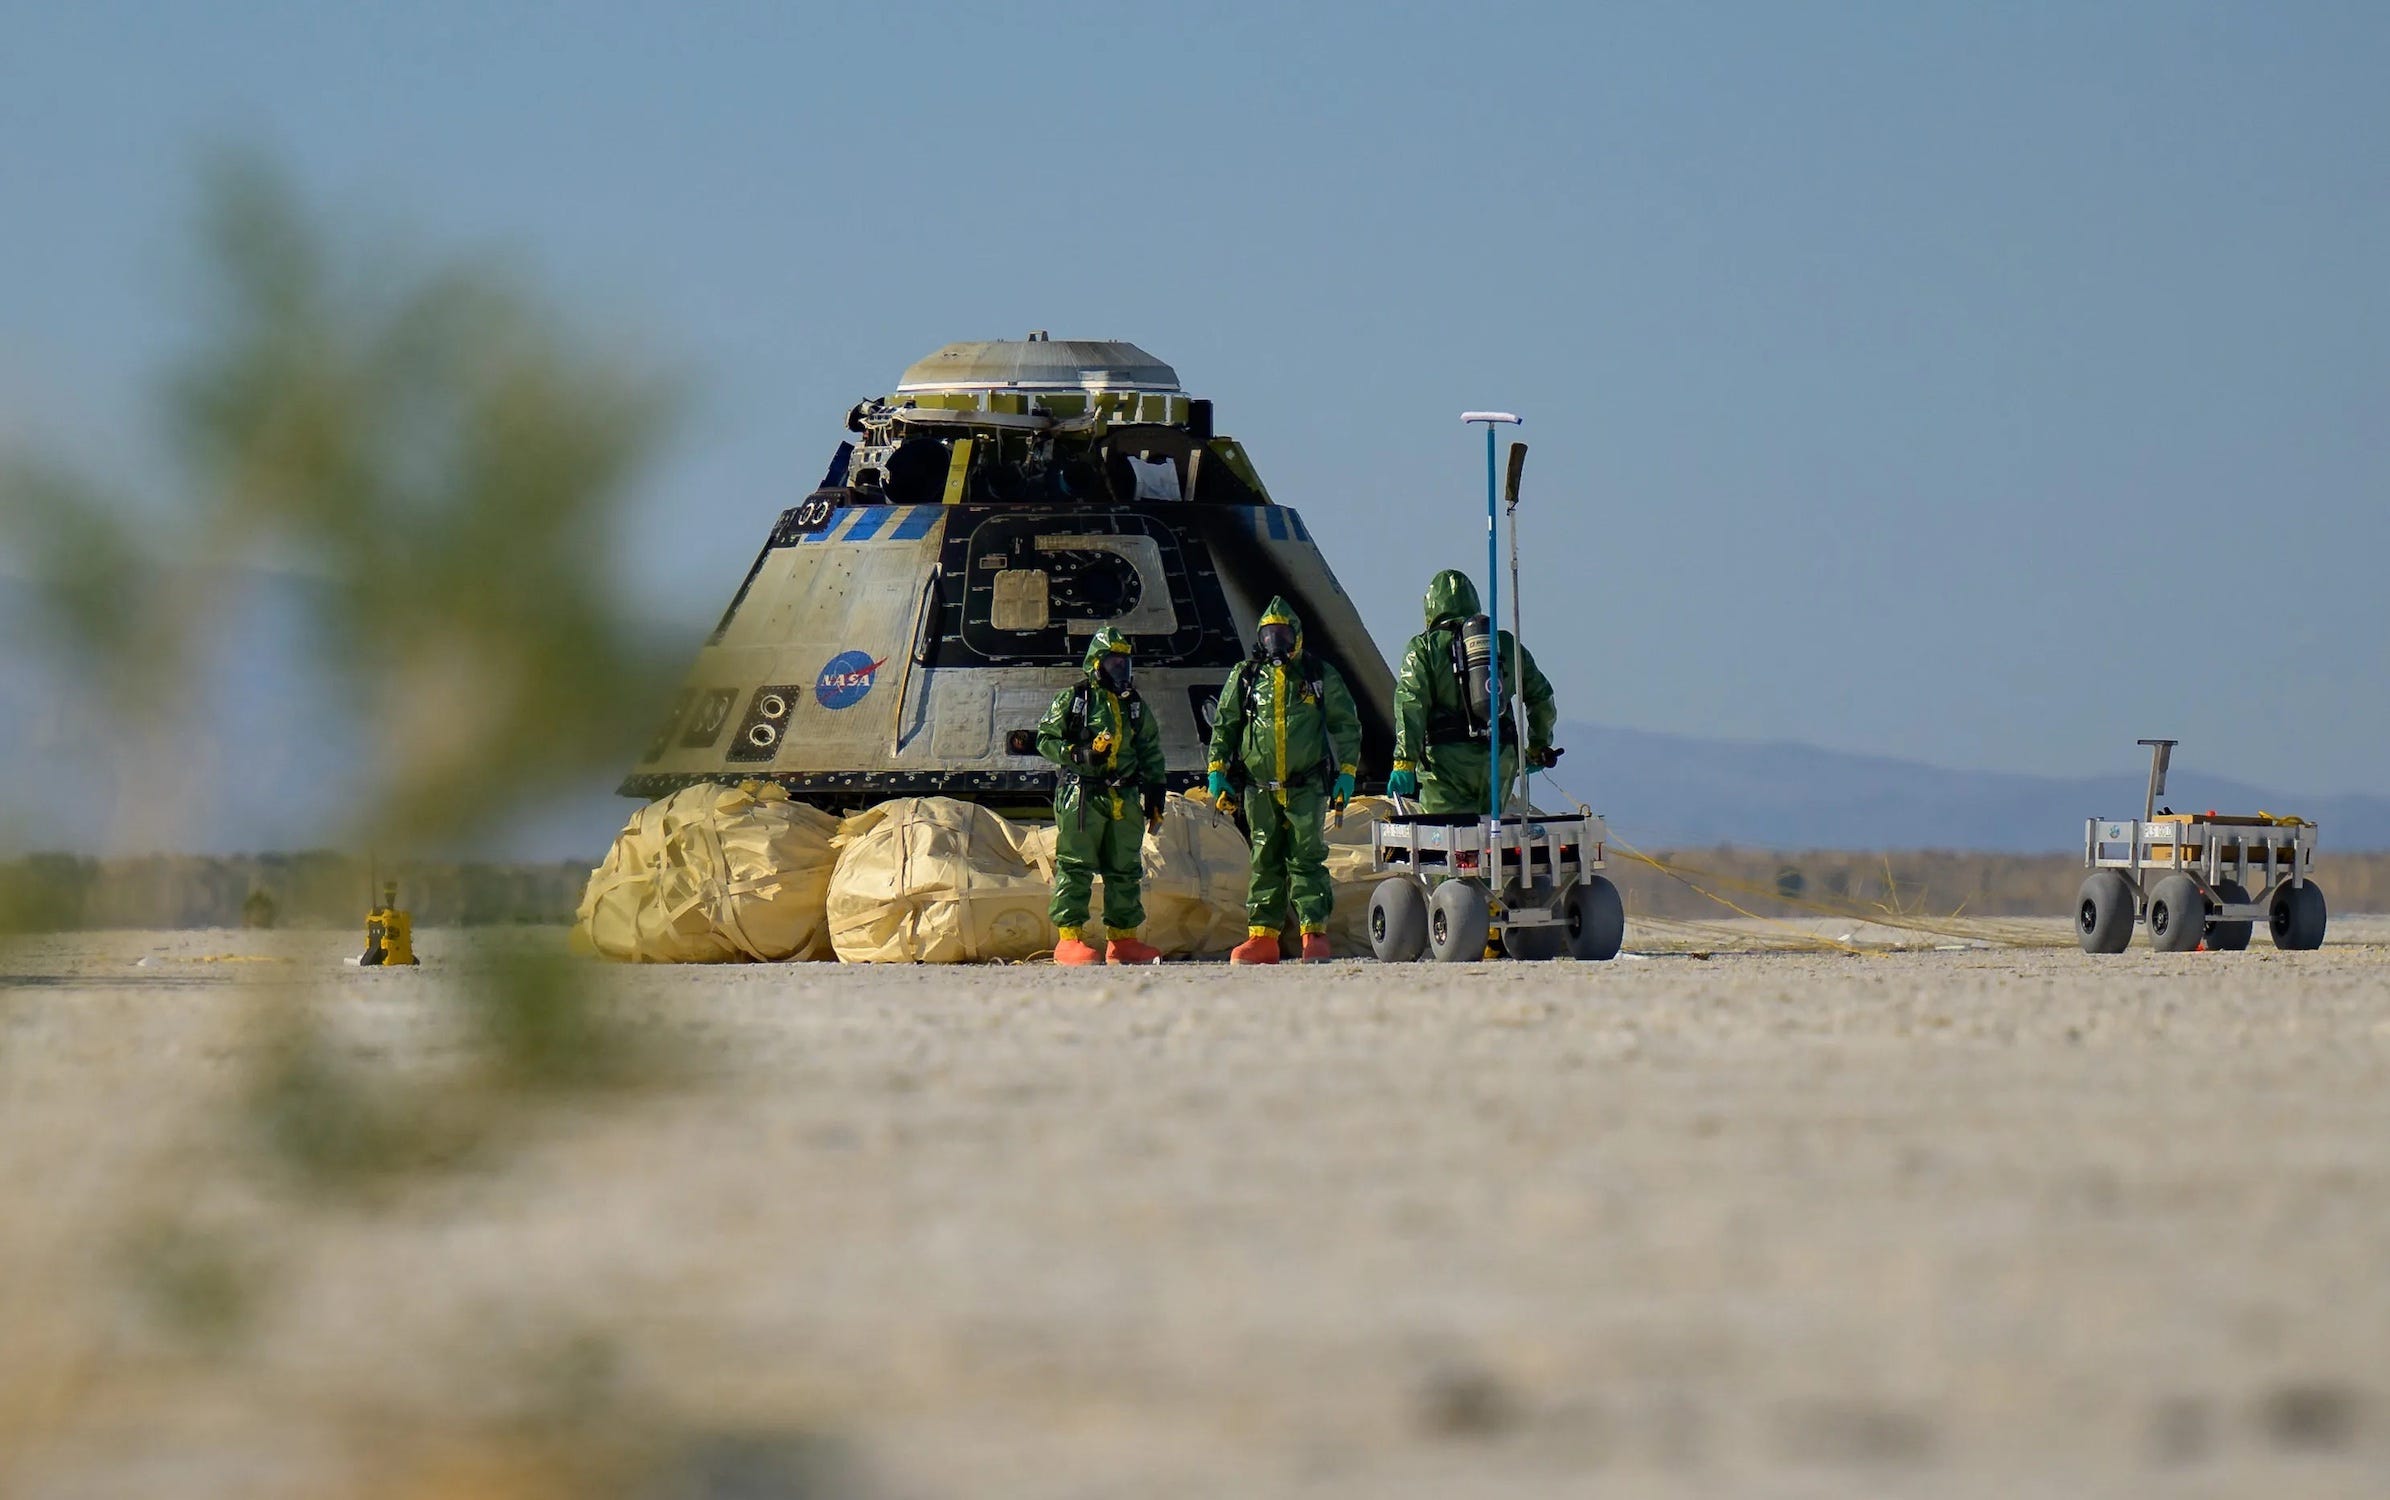 Drei Menschen in grünen Schutzanzügen stehen neben einer Raumkapsel, die auf großen Airbags auf zwei metallenen Rover-ähnlichen Karren in der Wüste sitzt